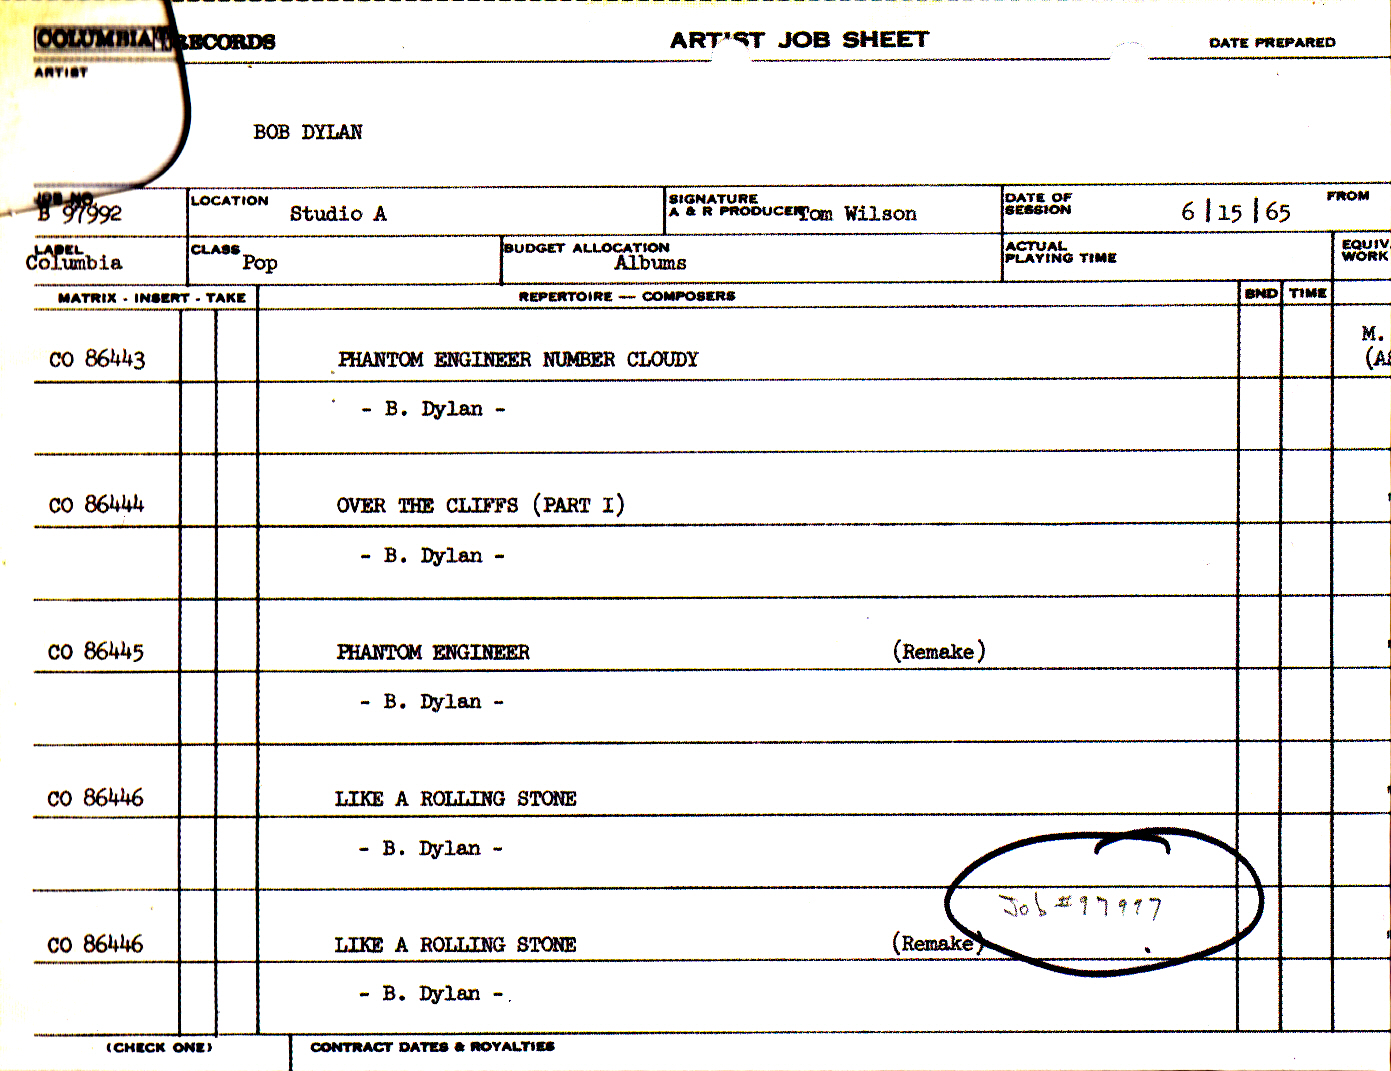 Artist Job Sheet for recording session 15 June 1965 